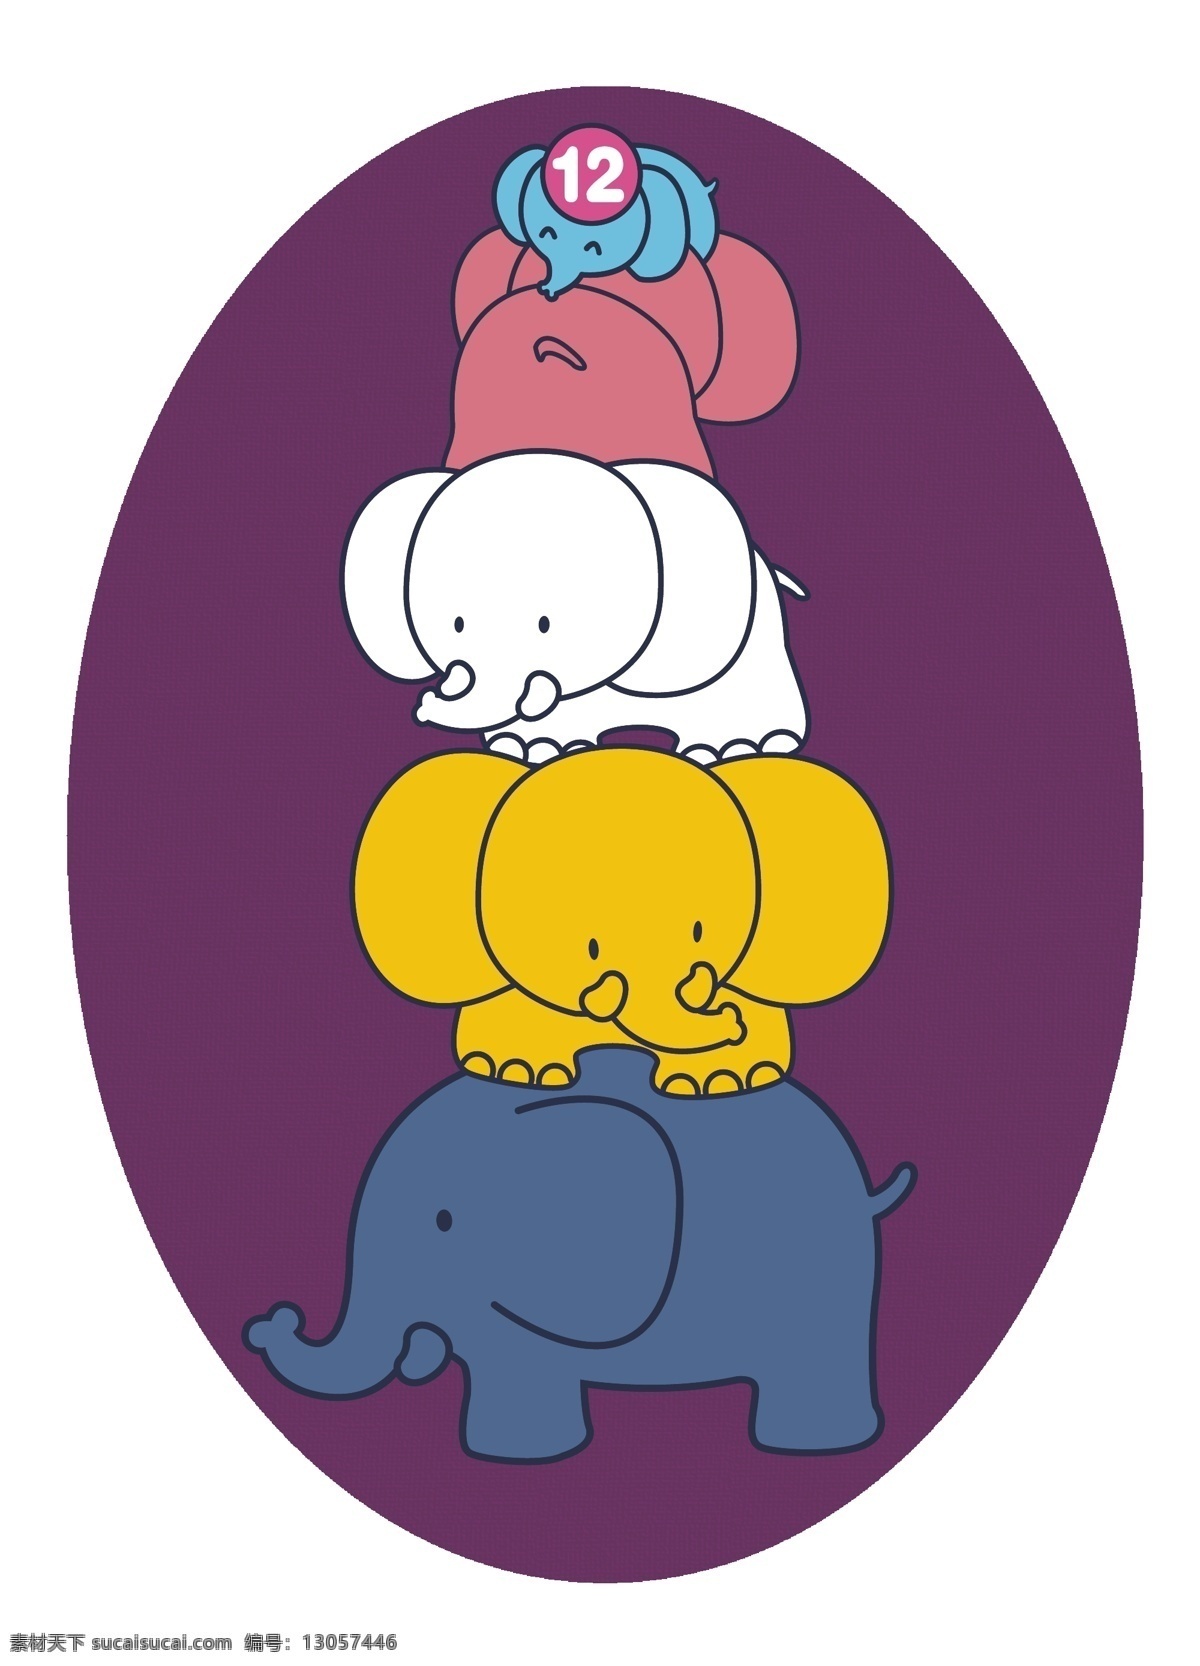 小象叠罗汉 小象 叠罗汉 卡通 可爱 矢量 底纹 野生动物 生物世界 原创卡通素材